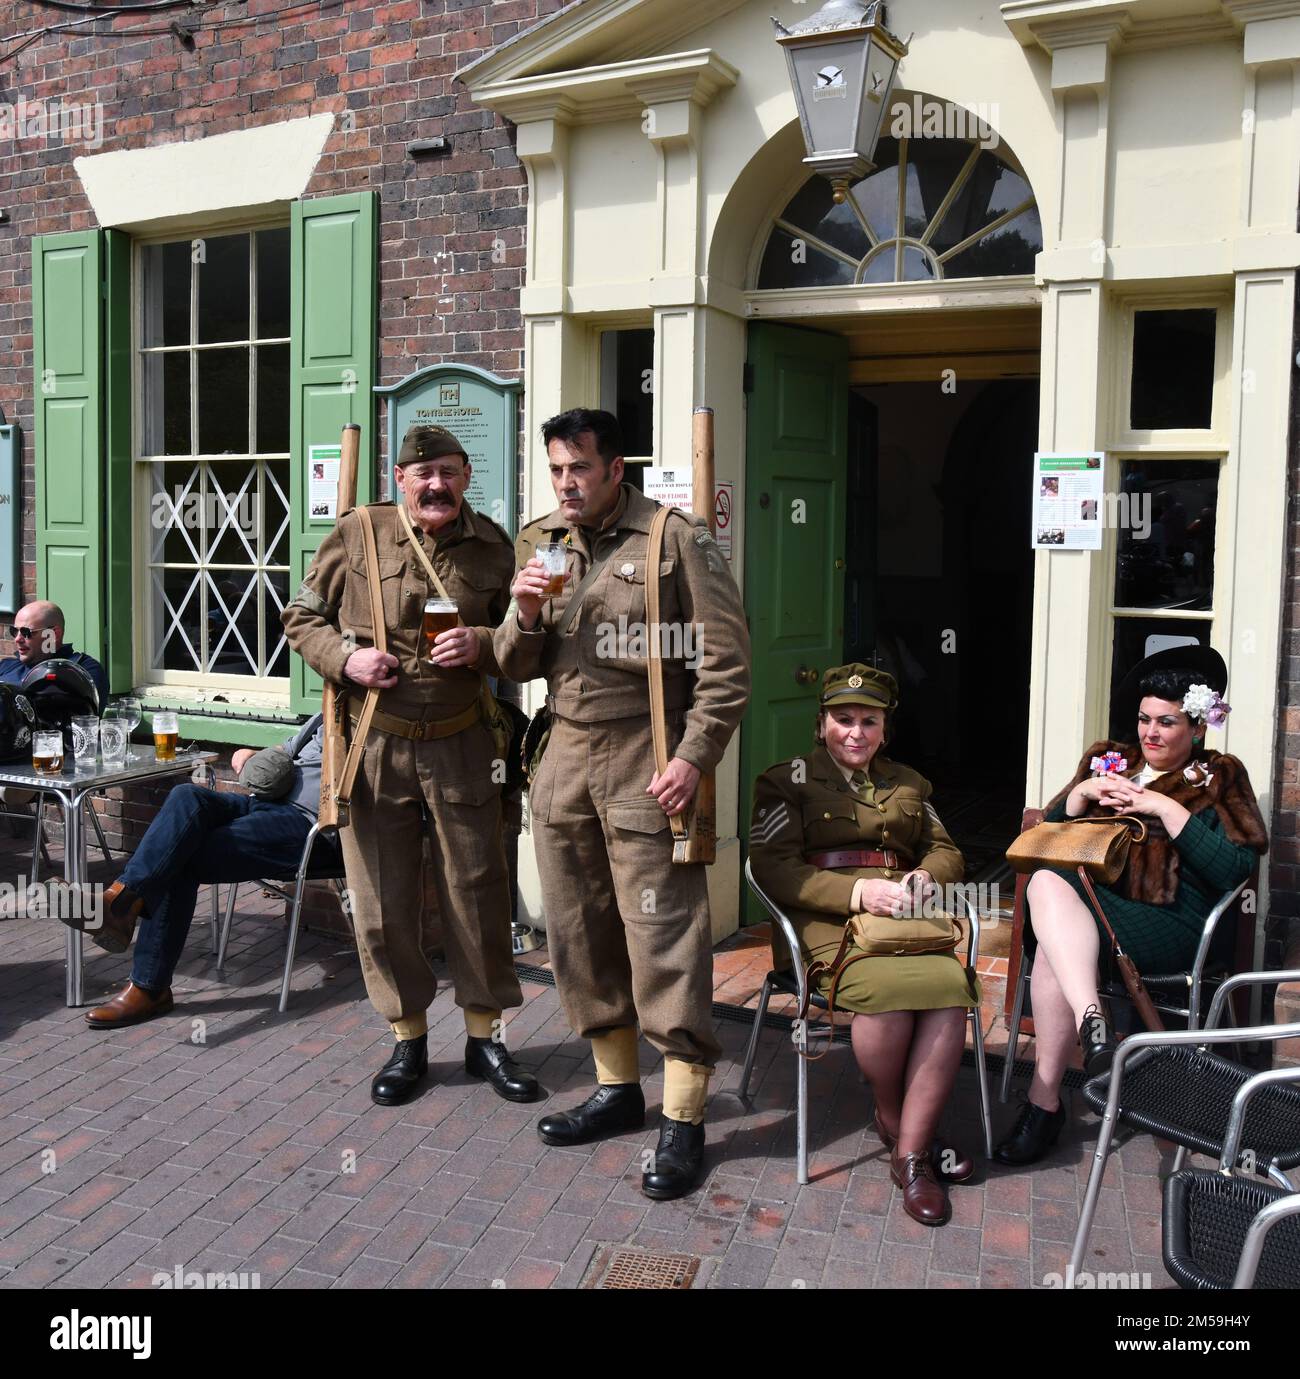 Die historische Stadt Ironbridge wurde dieses Wochenende an die 1940er erinnert, als zwei Nachbildungen des Weltkriegs aus ganz Großbritannien an der Wohltätigkeitsorganisation teilnahmen Stockfoto